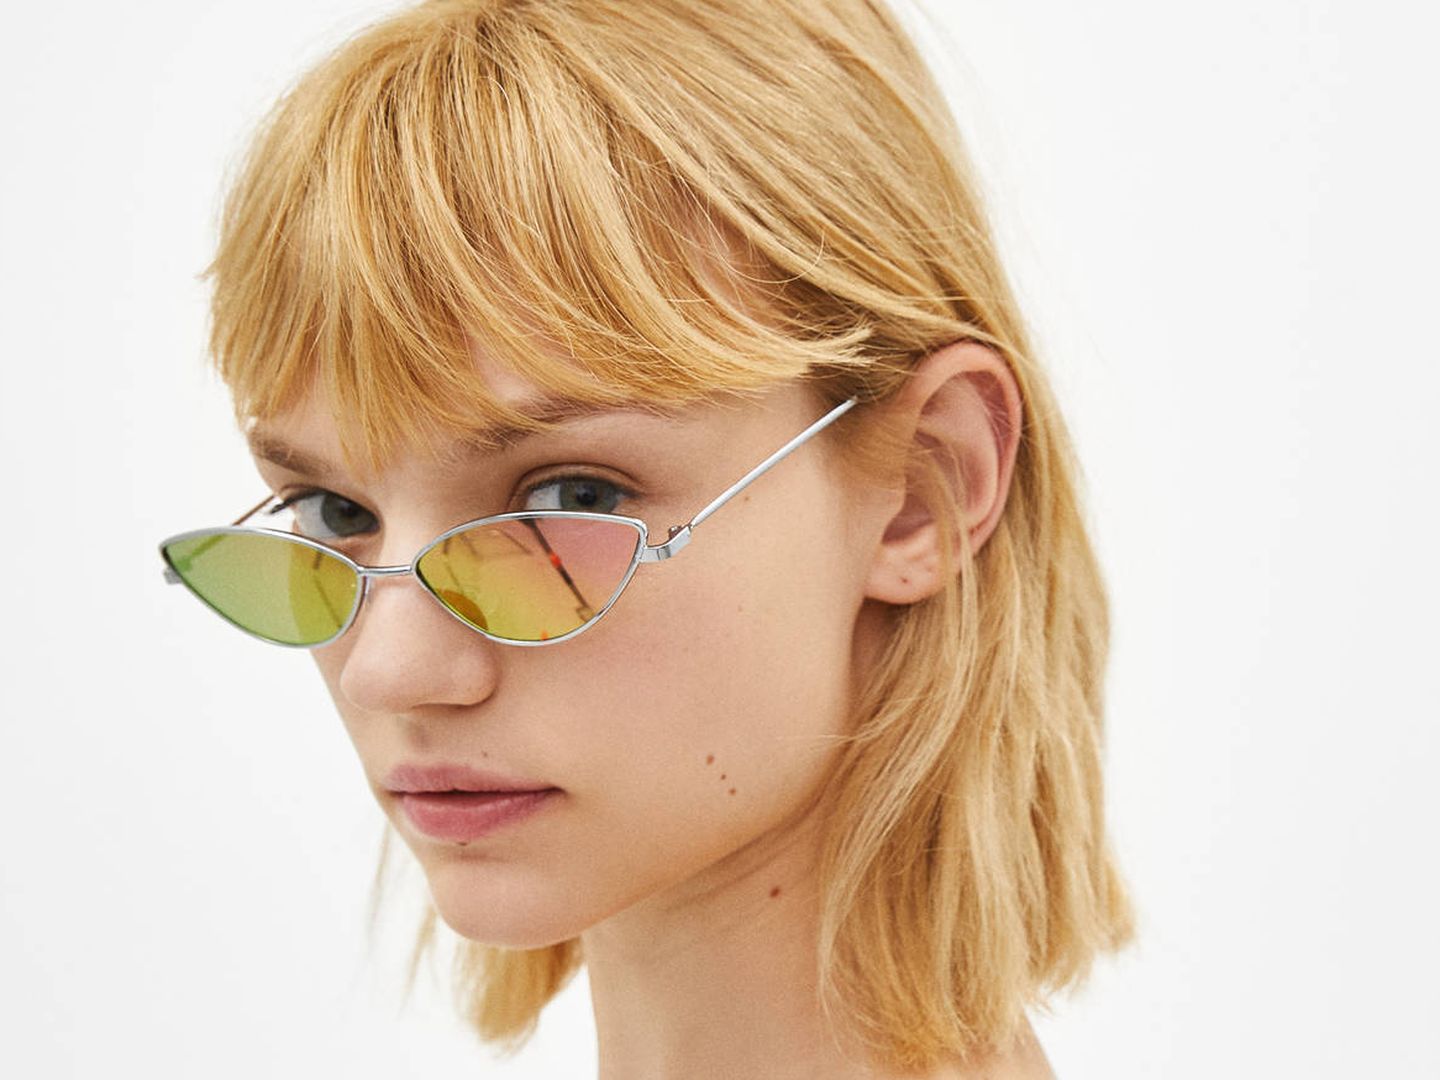 Gafas de sol con lentes espejo al 40% de descuento (5,99 euros).